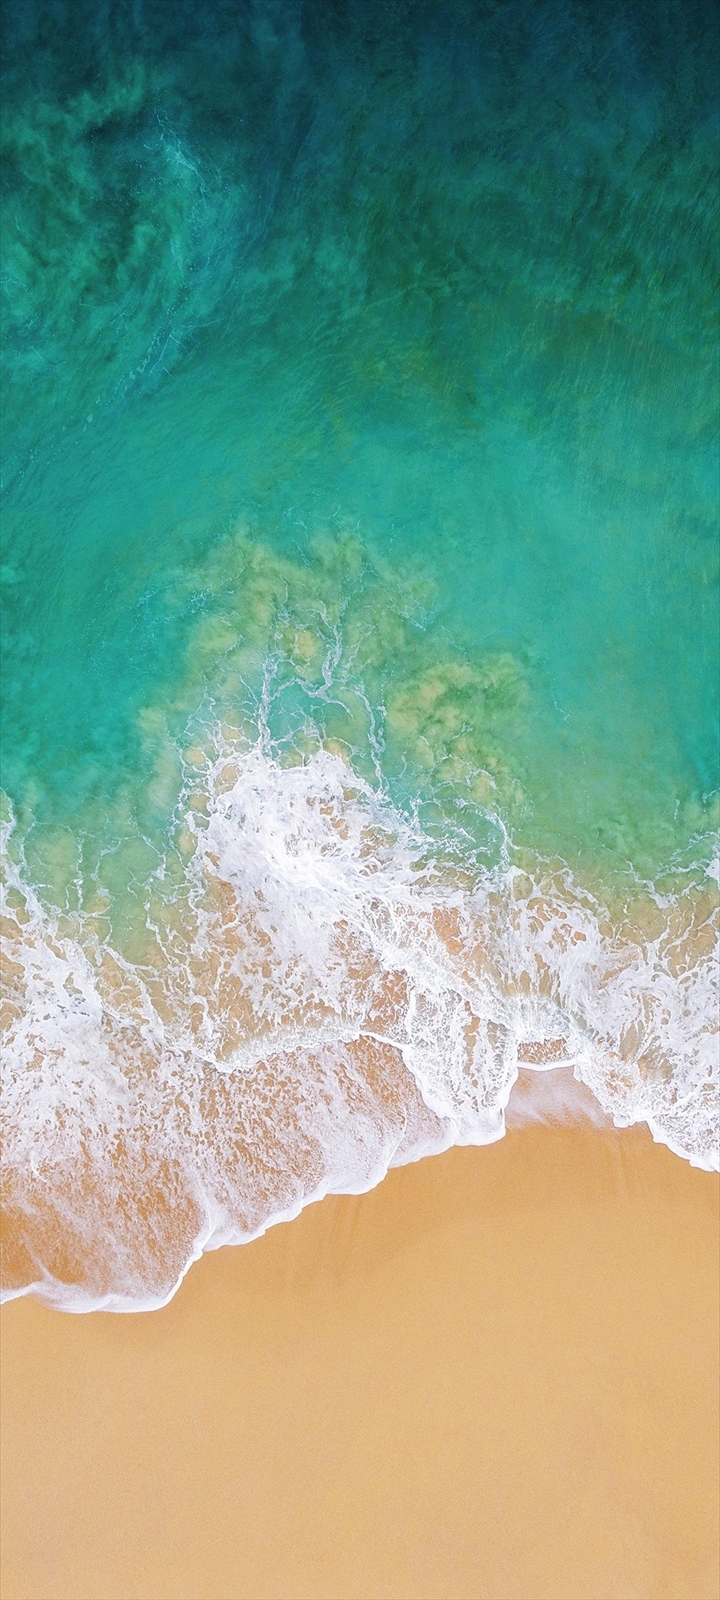 俯瞰視点 綺麗な海と浜辺 Moto G8 Power Lite Androidスマホ壁紙 待ち受け スマラン